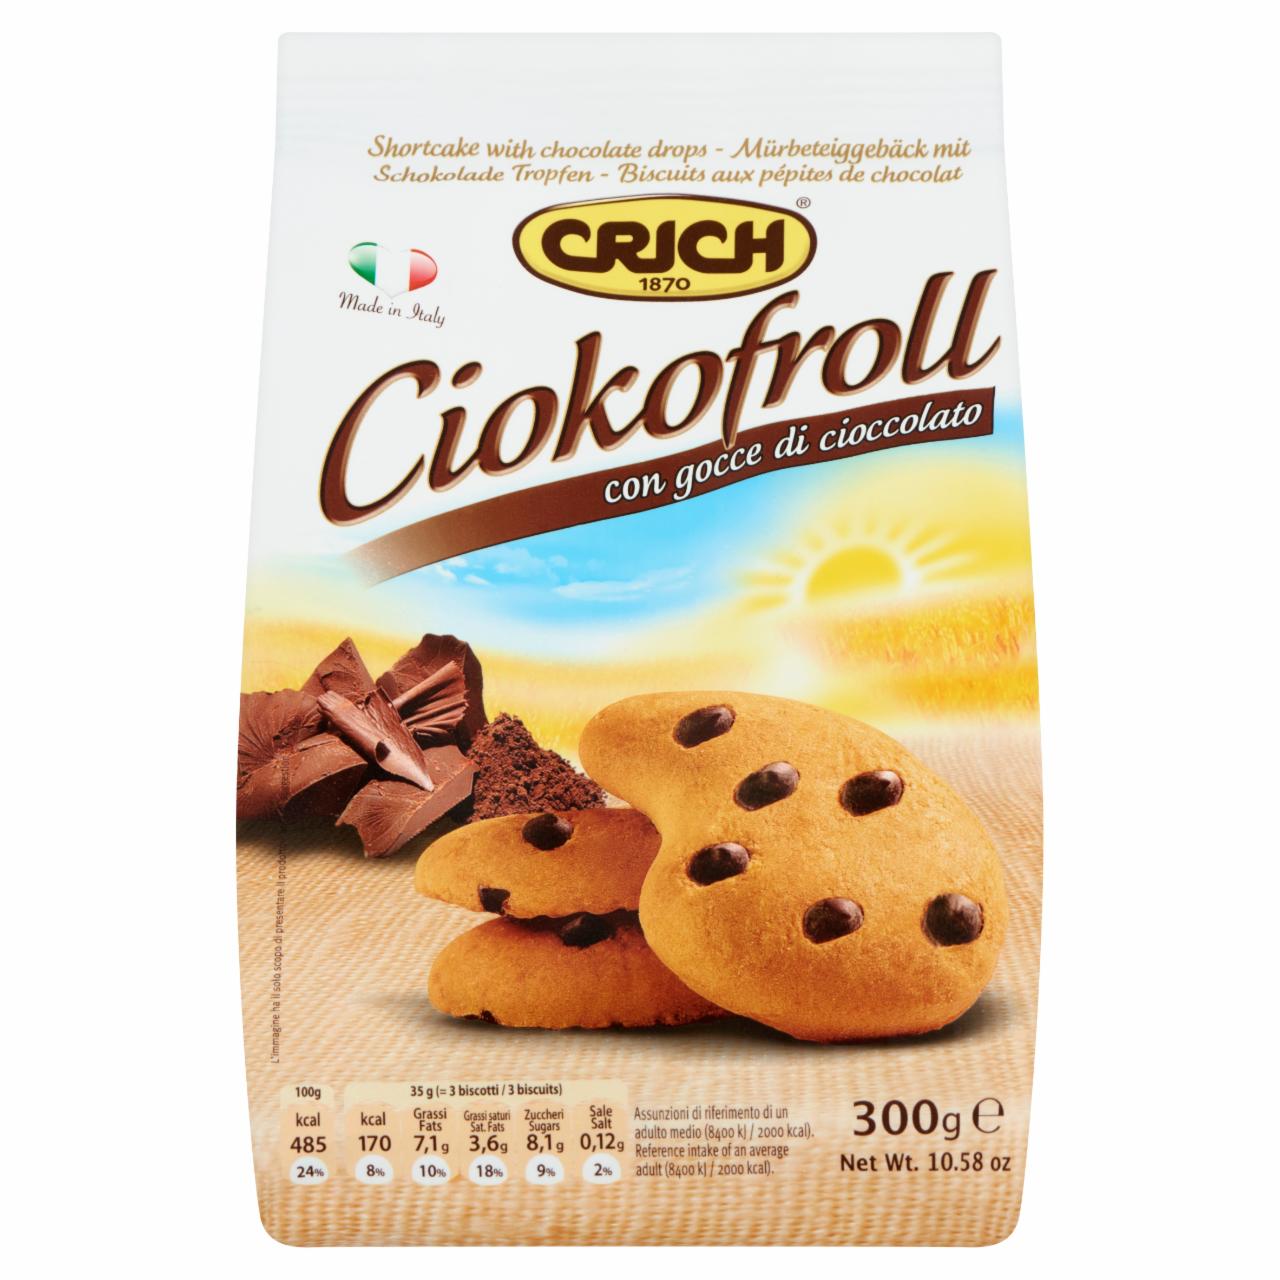 Képek - Crich Ciokofroll édes omlós keksz csokoládécseppekkel 300 g